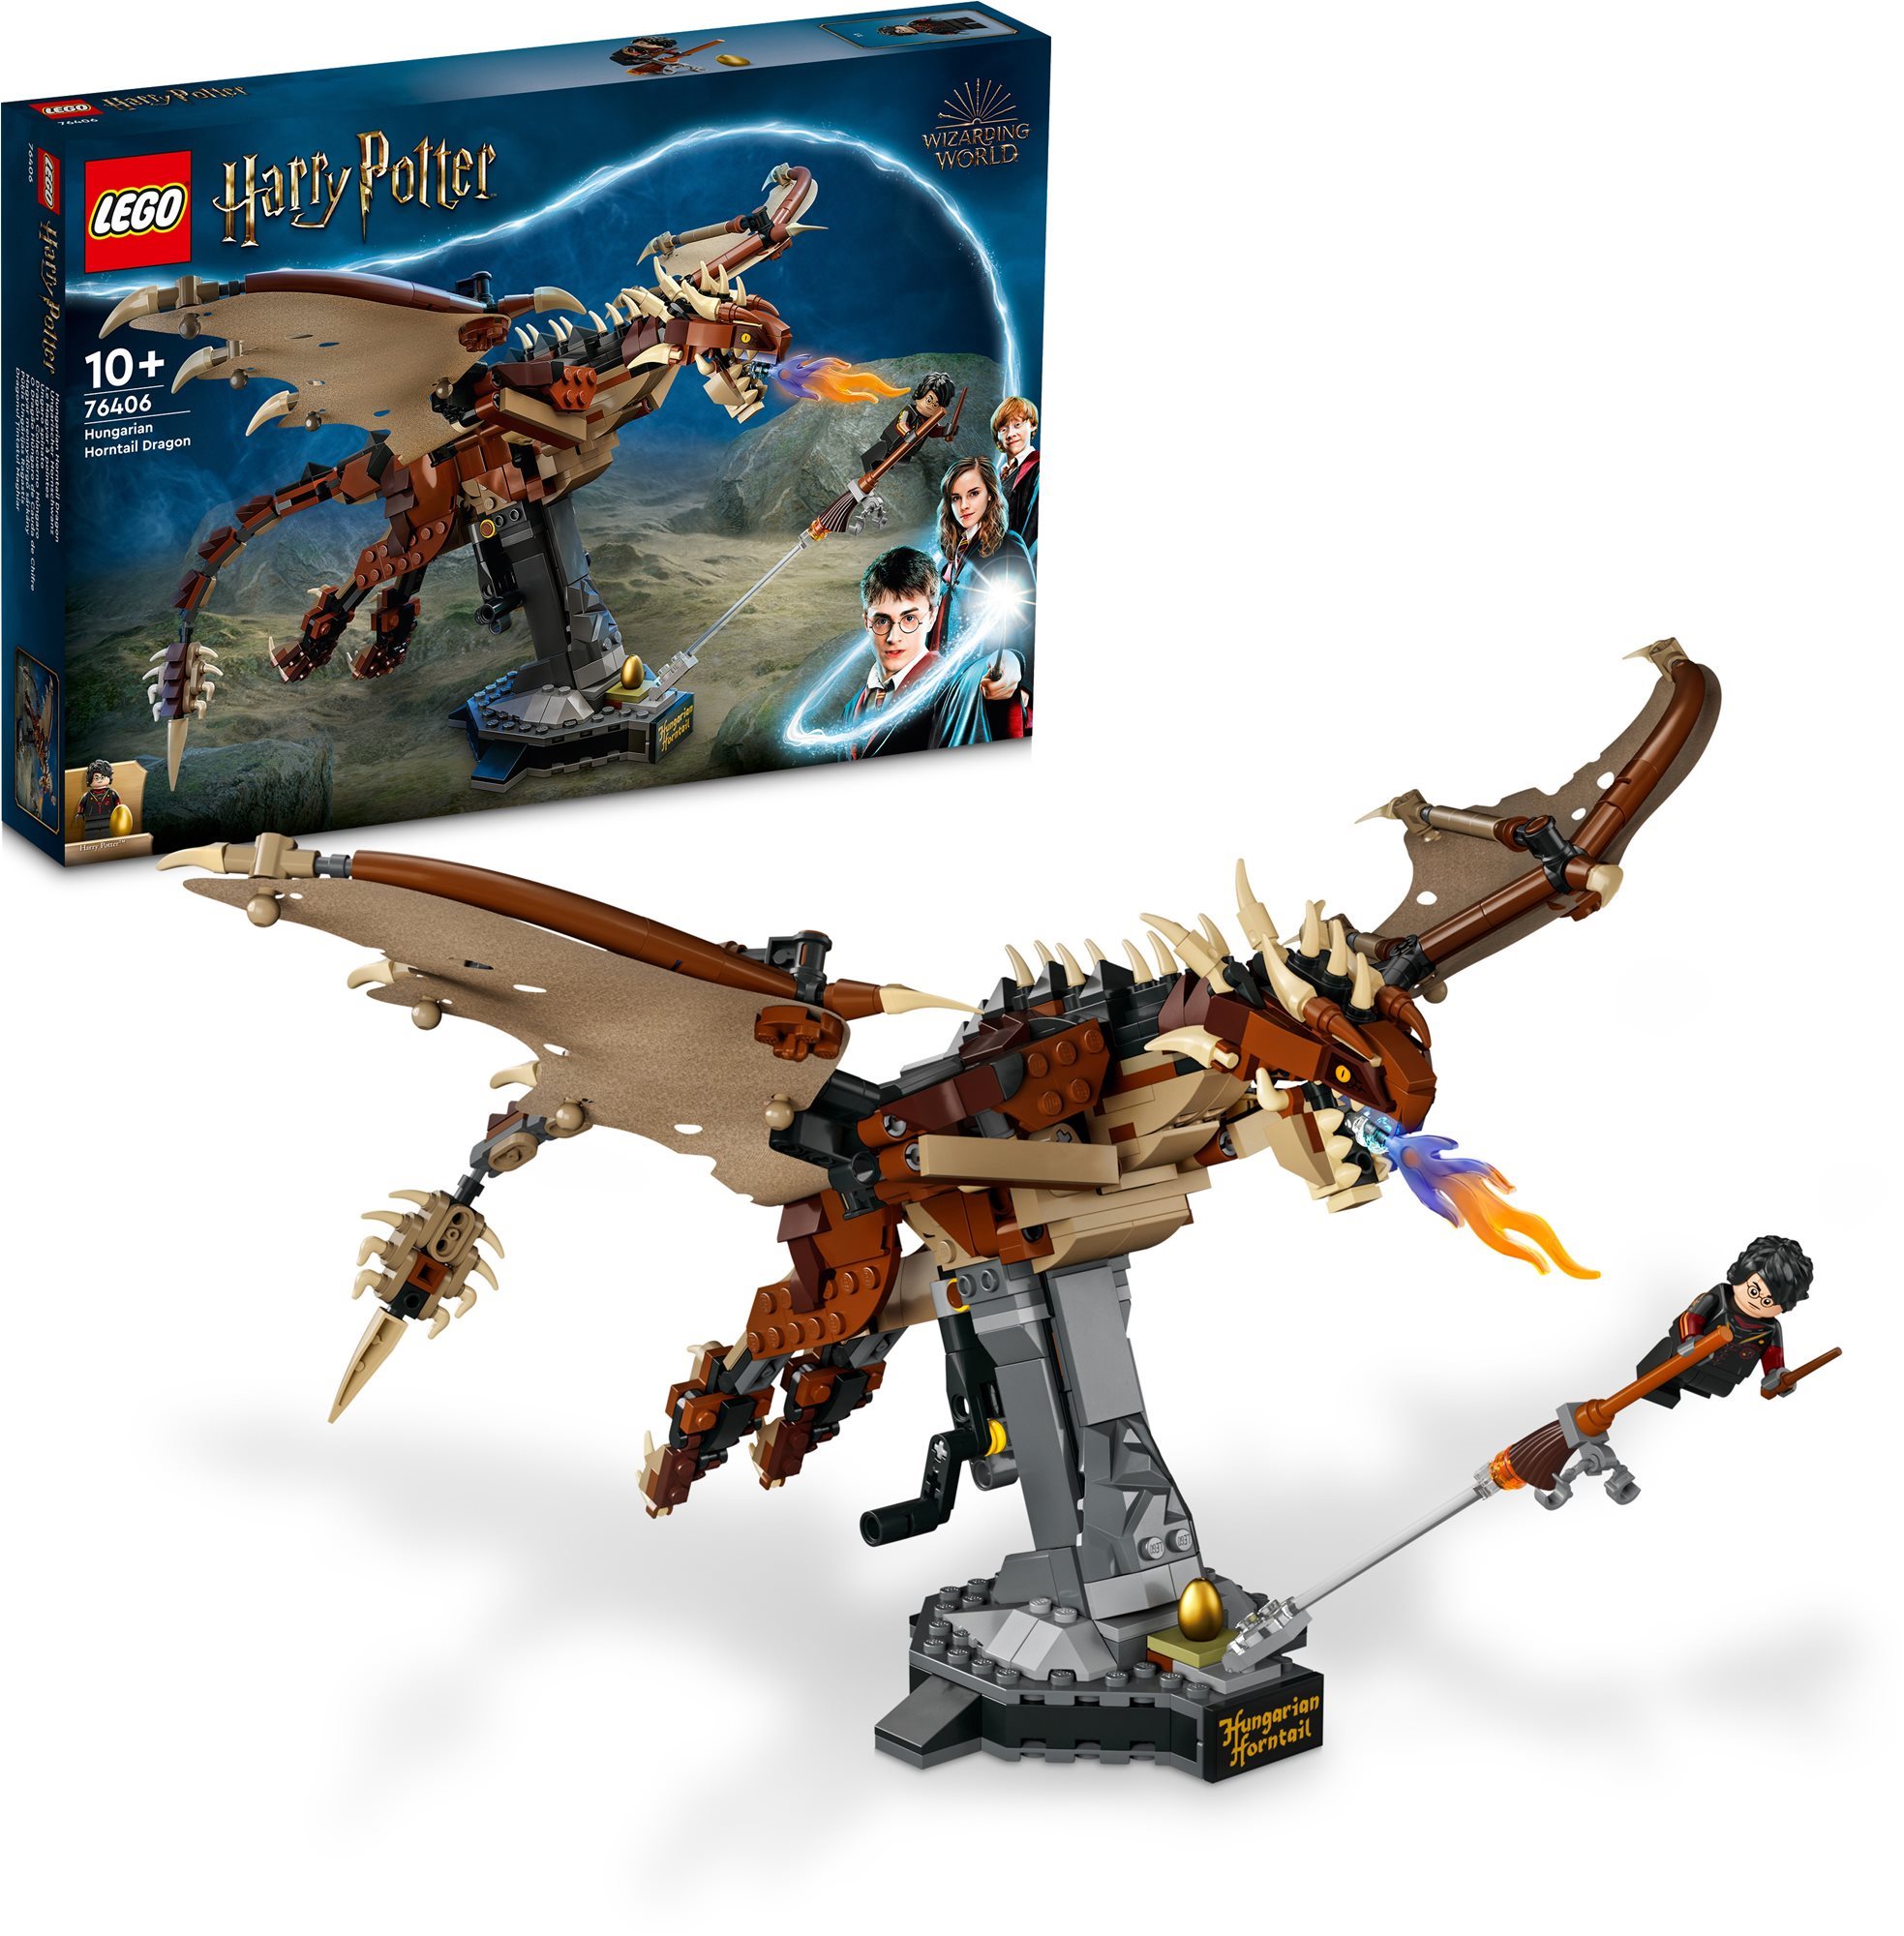 LEGO® Harry Potter™ Magyar mennydörgő sárkány 76406